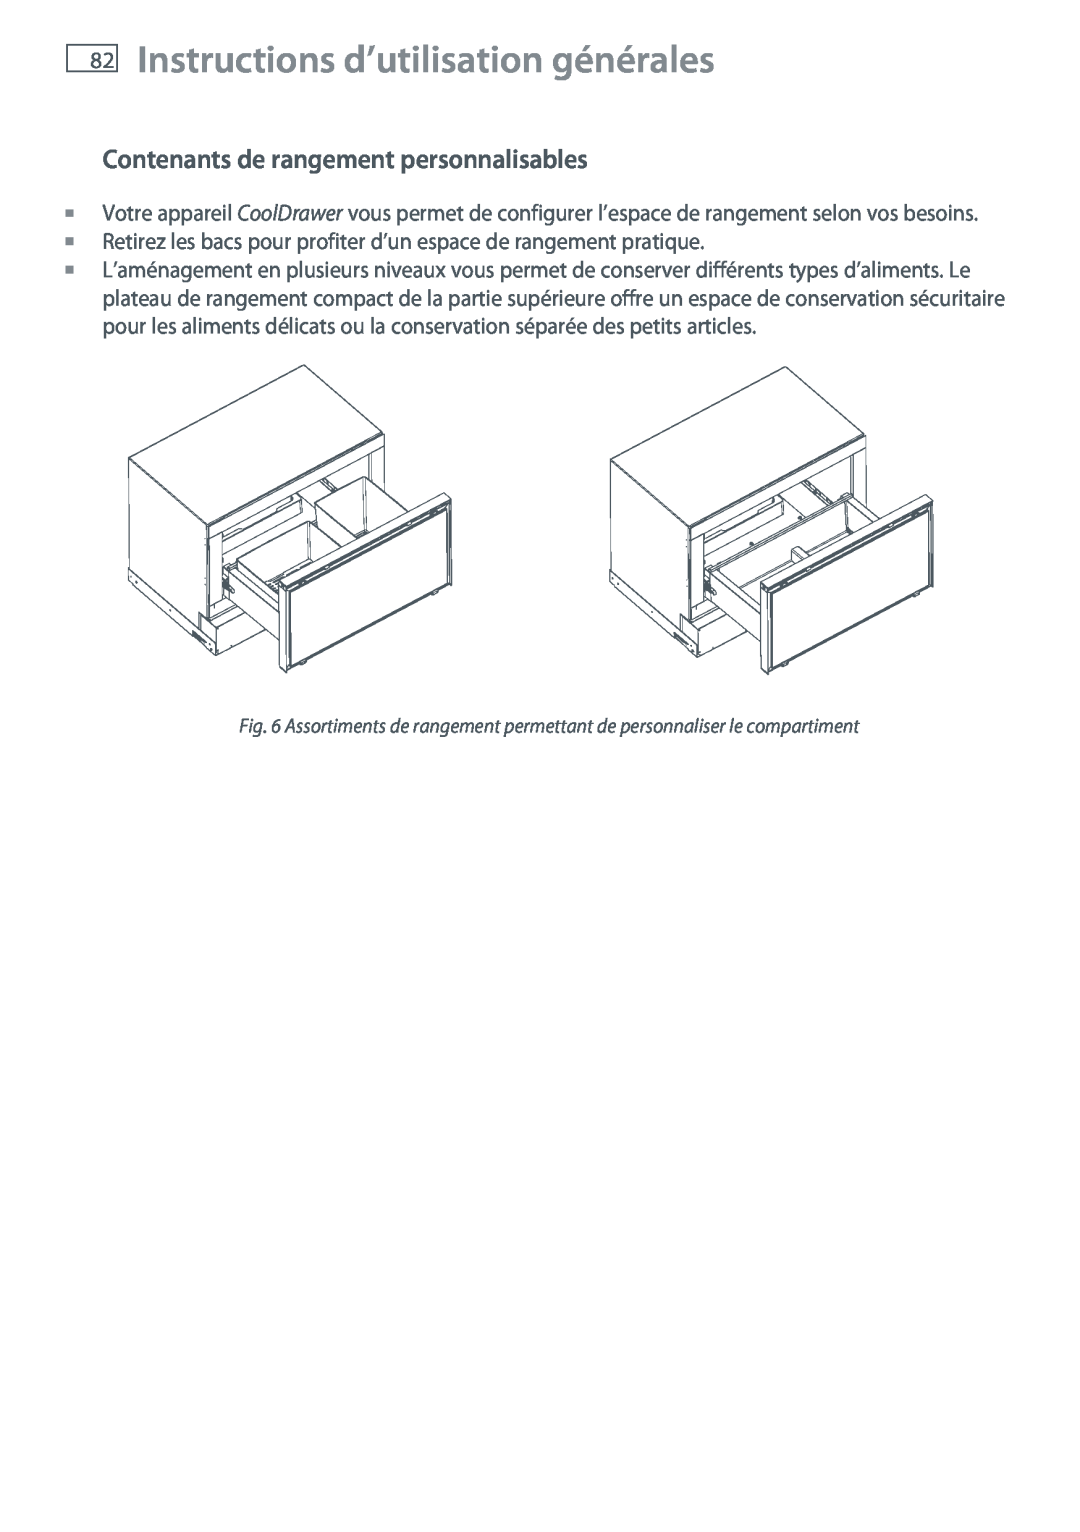 Fisher & Paykel RB905, RB365 manual Contenants de rangement personnalisables, Instructions d’utilisation générales 